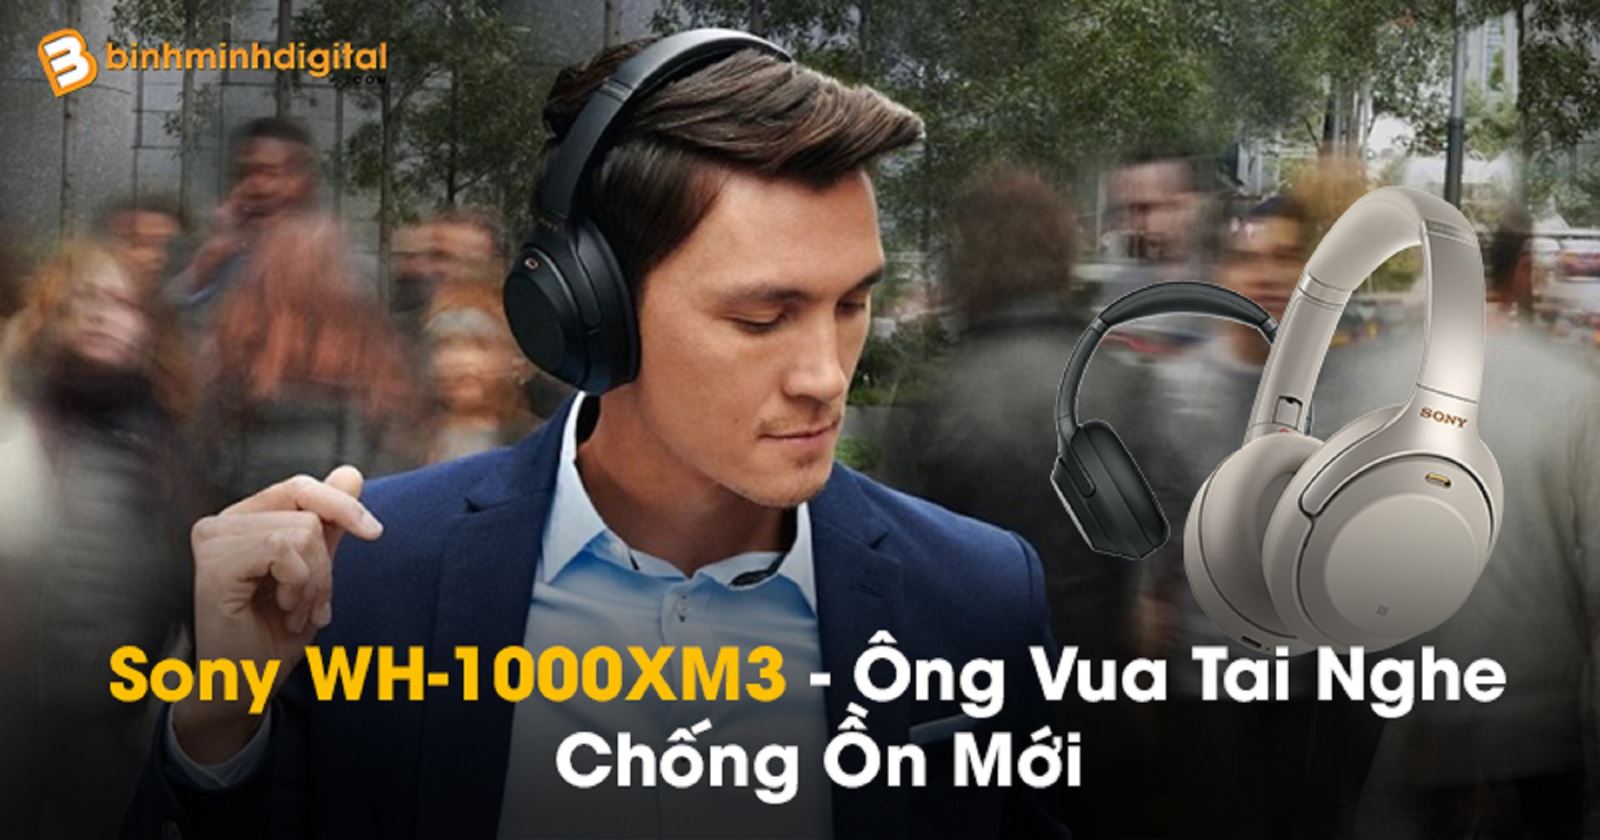 Sony WH-1000XM3 - Ông Vua Tai Nghe Chống Ồn Mới